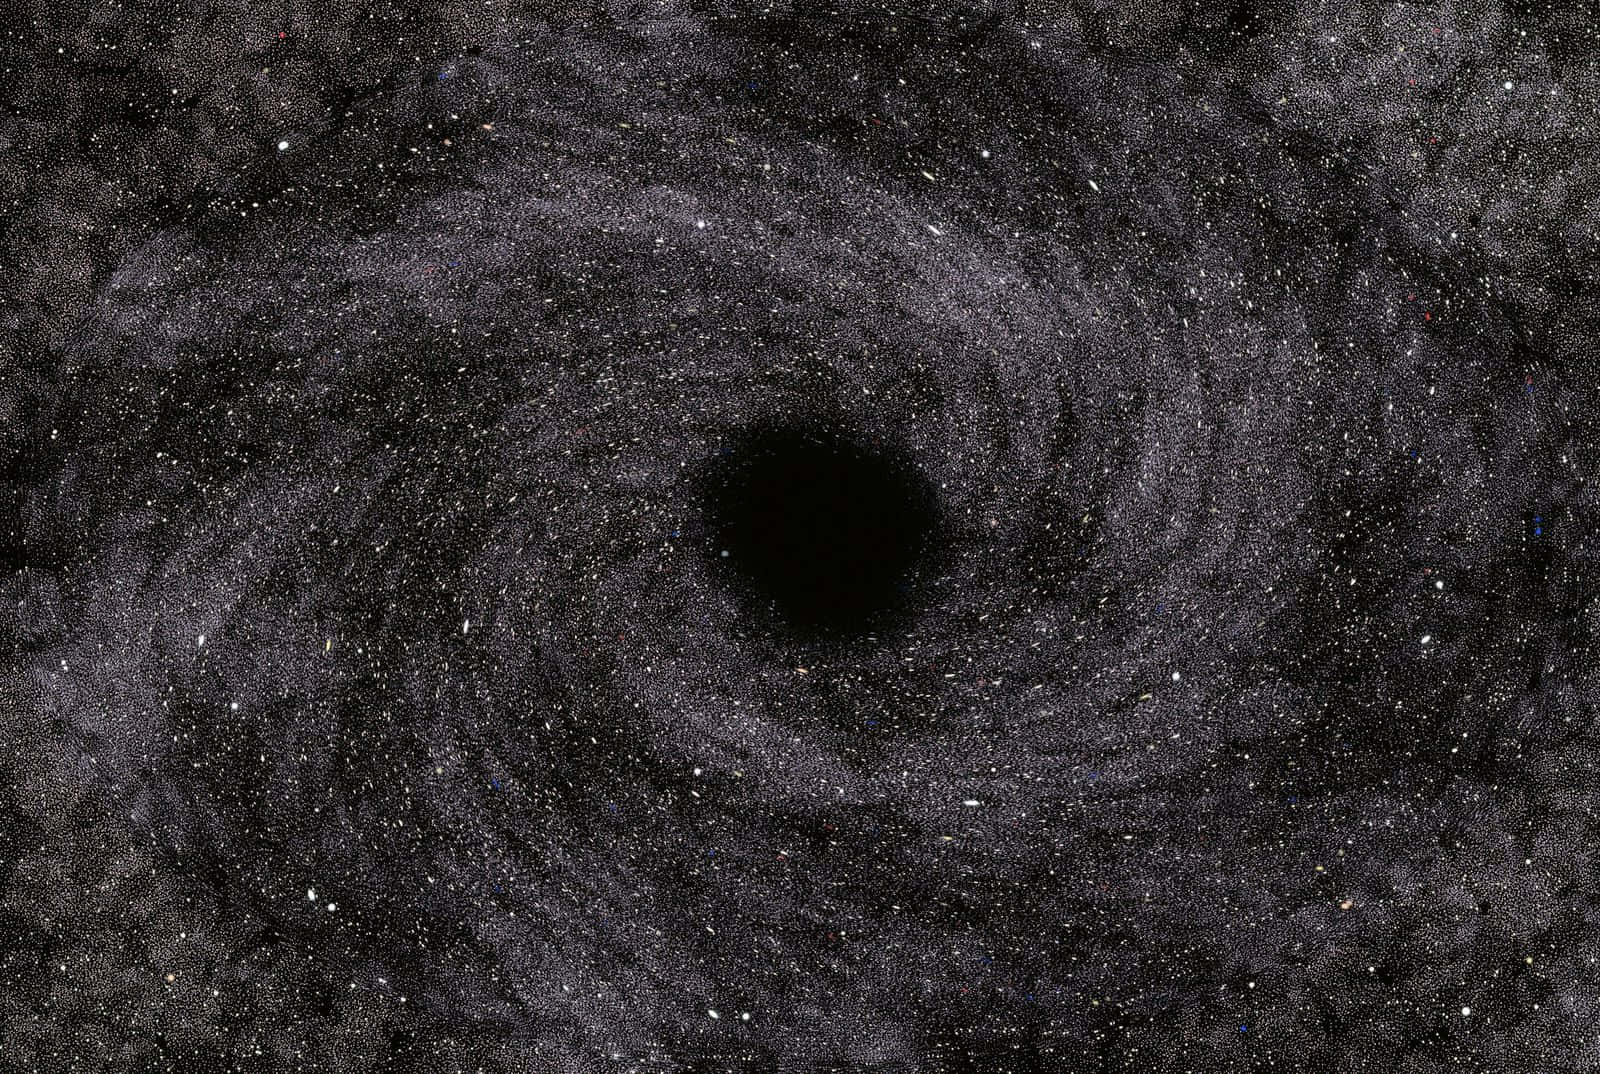 Laimagen De Un Agujero Negro Capturada Por El Telescopio Hubble, Creada Por Un Artista.